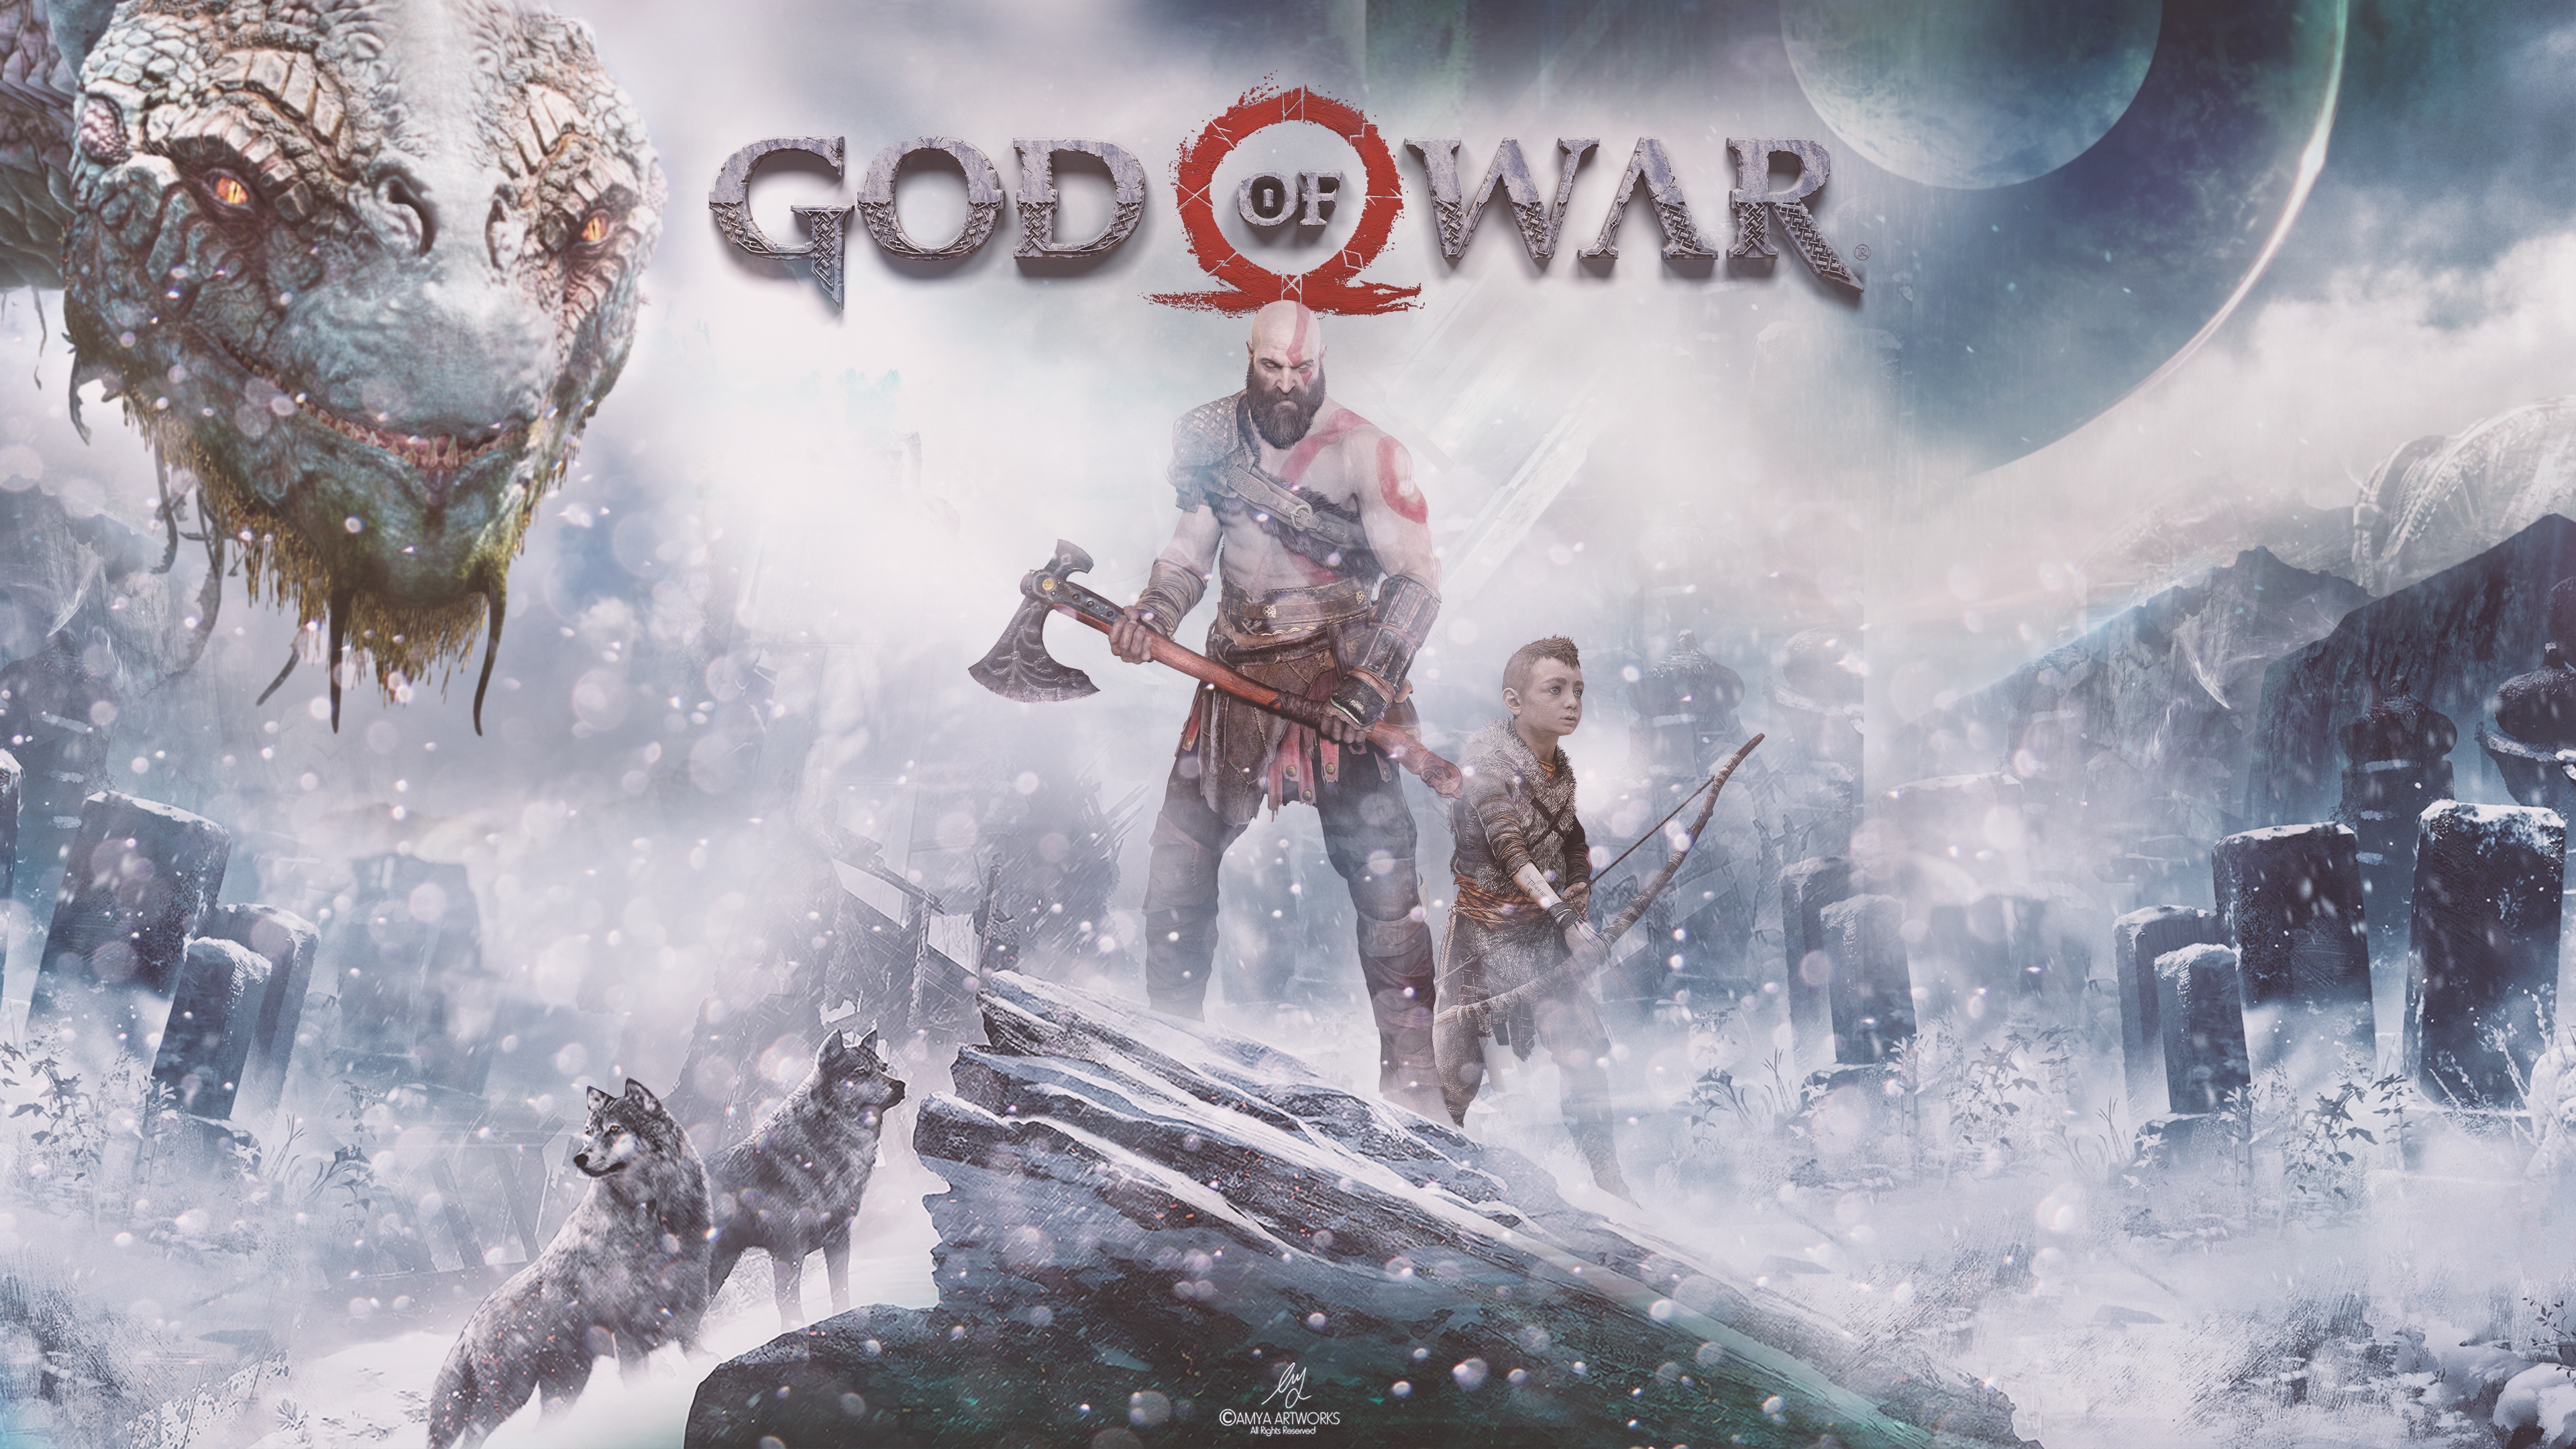 sea monster, kratos (god of war), god of war, video game, god of war (2018), archer, atreus (god of war), axe, bald, wolf Desktop Wallpaper